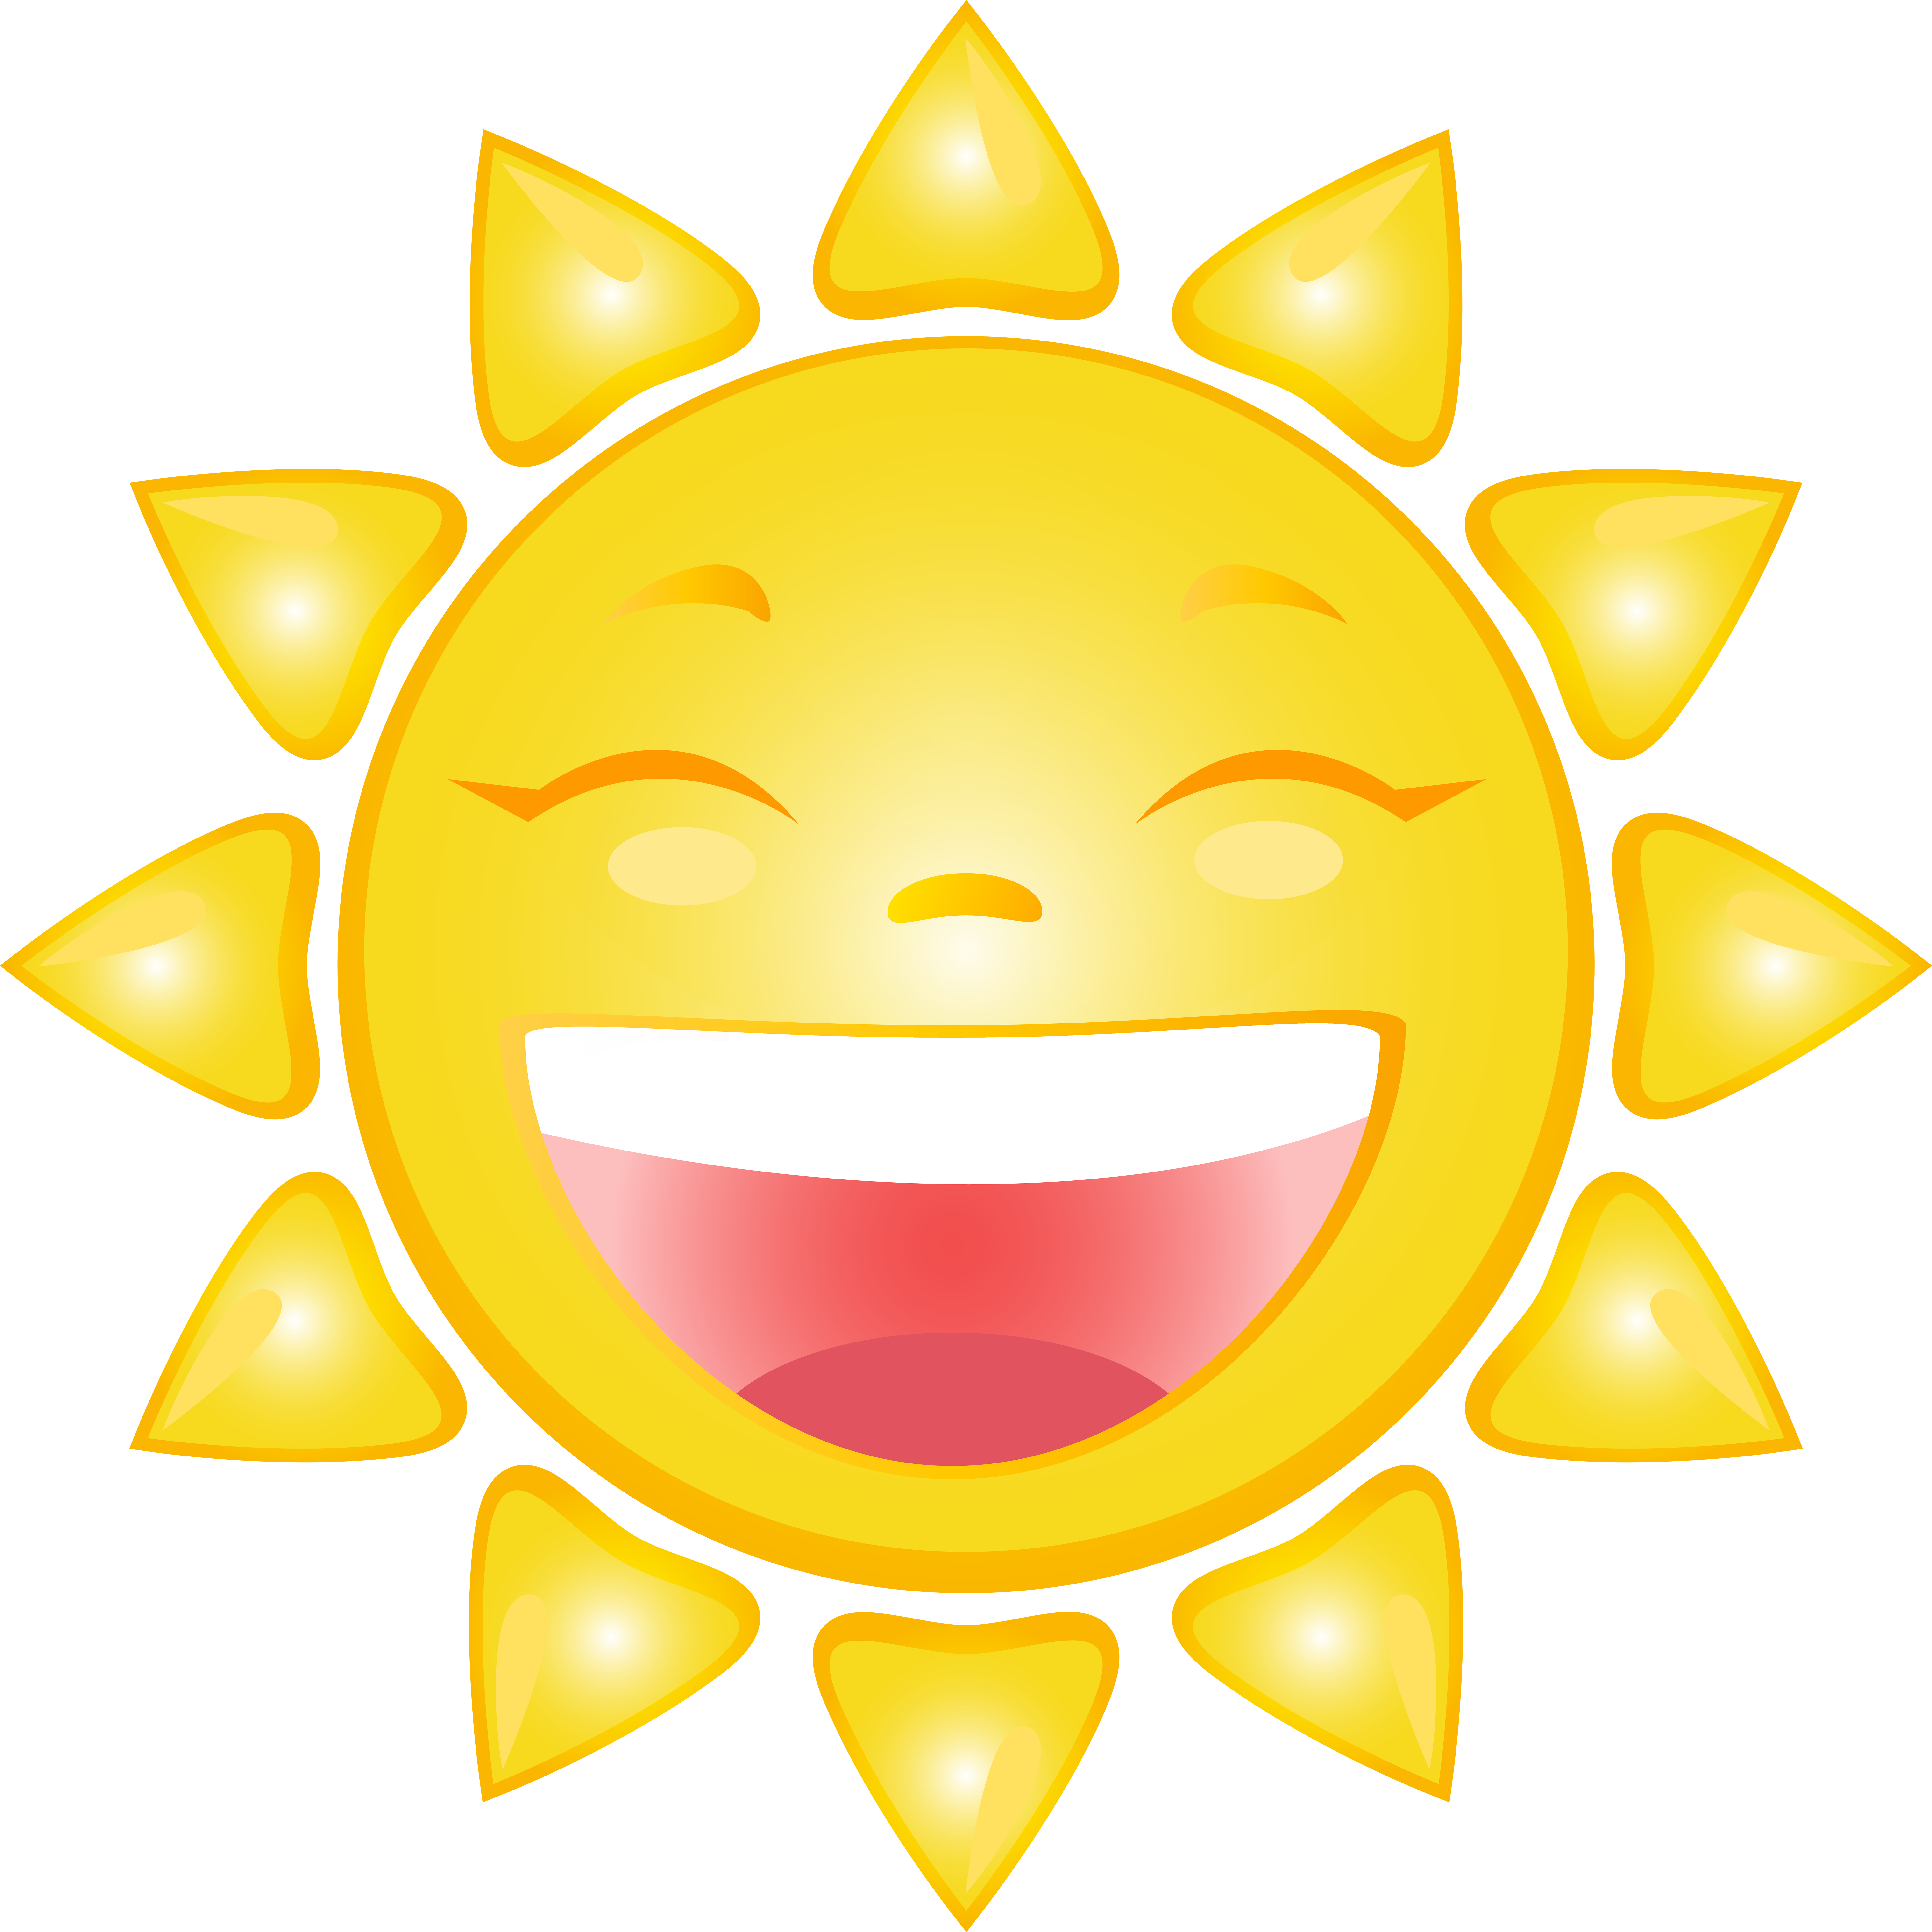 Smiling Sun Cartoon PNG Clip Art Image